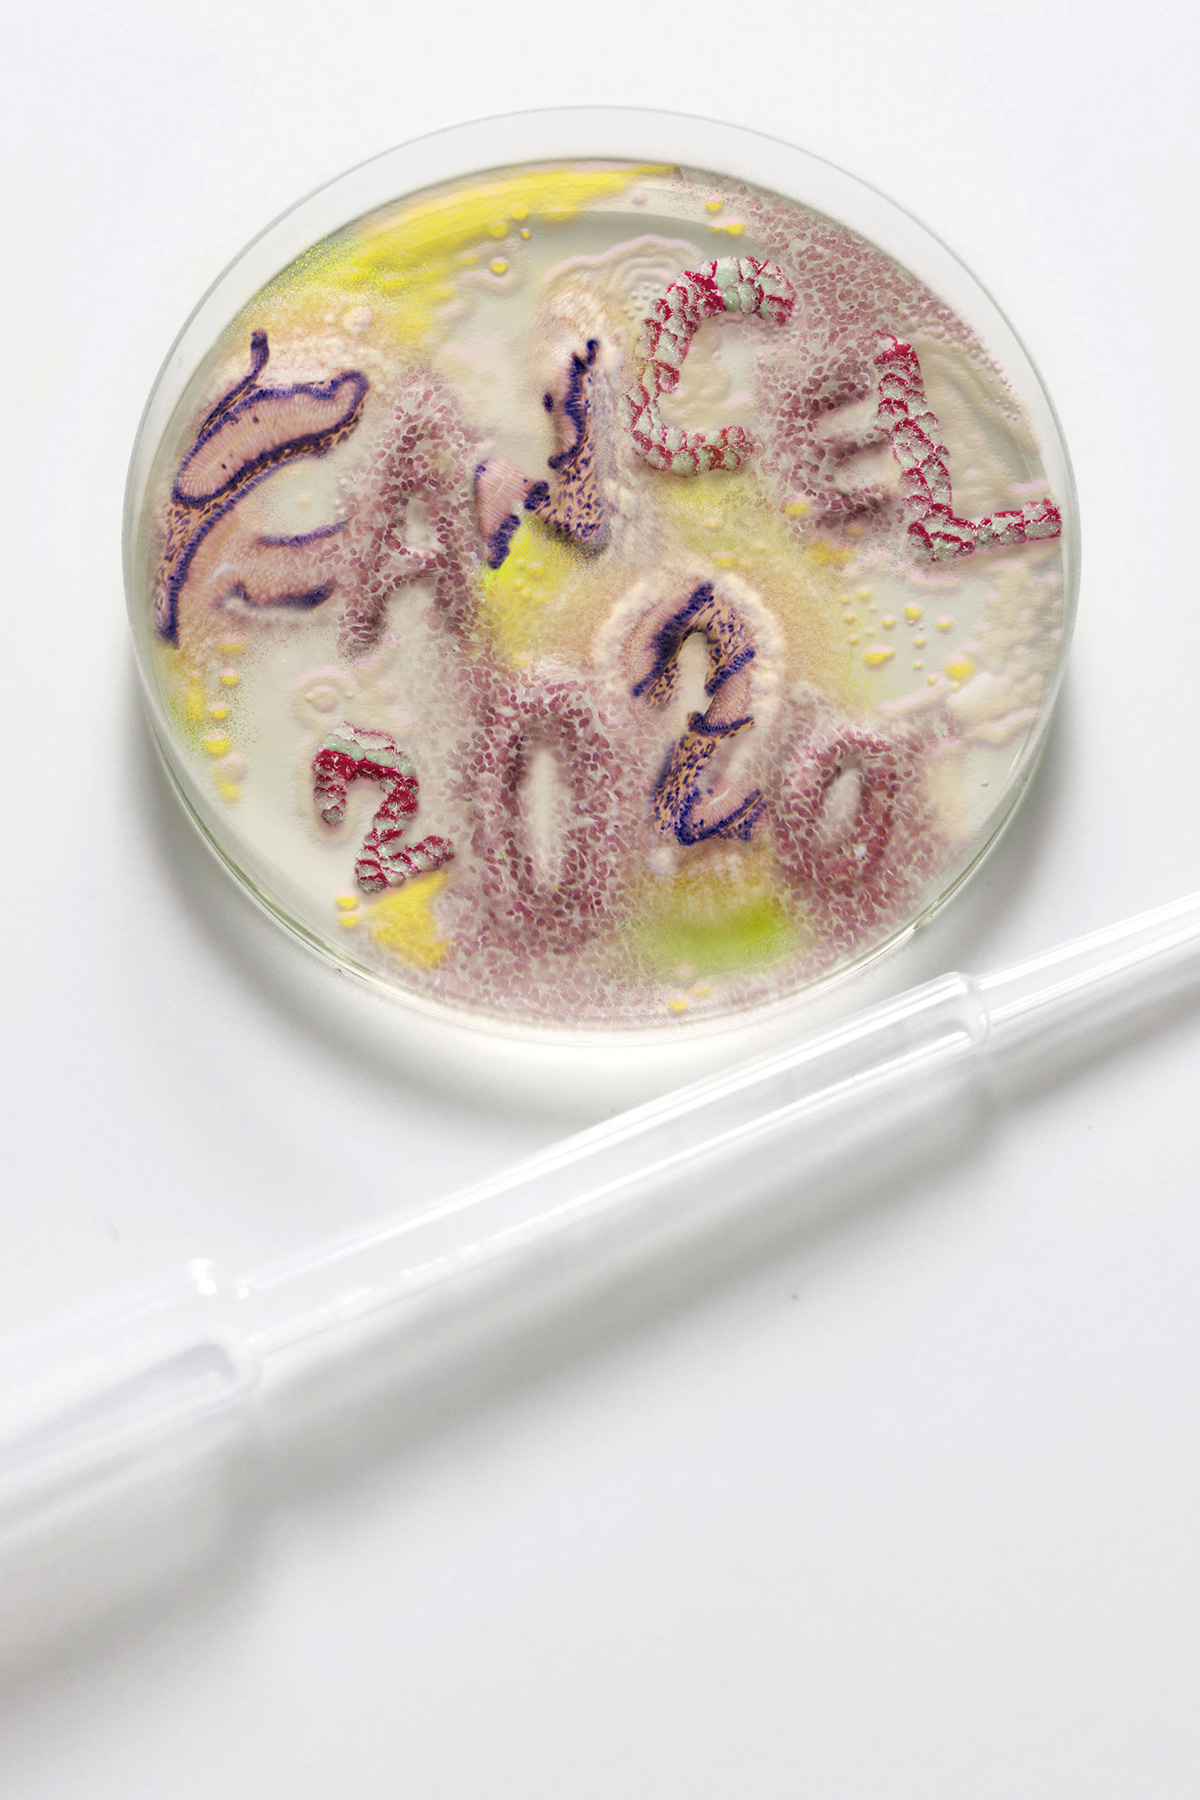 Bacteria corona COVid dish epidemic petri science virus Coronavirus petridish